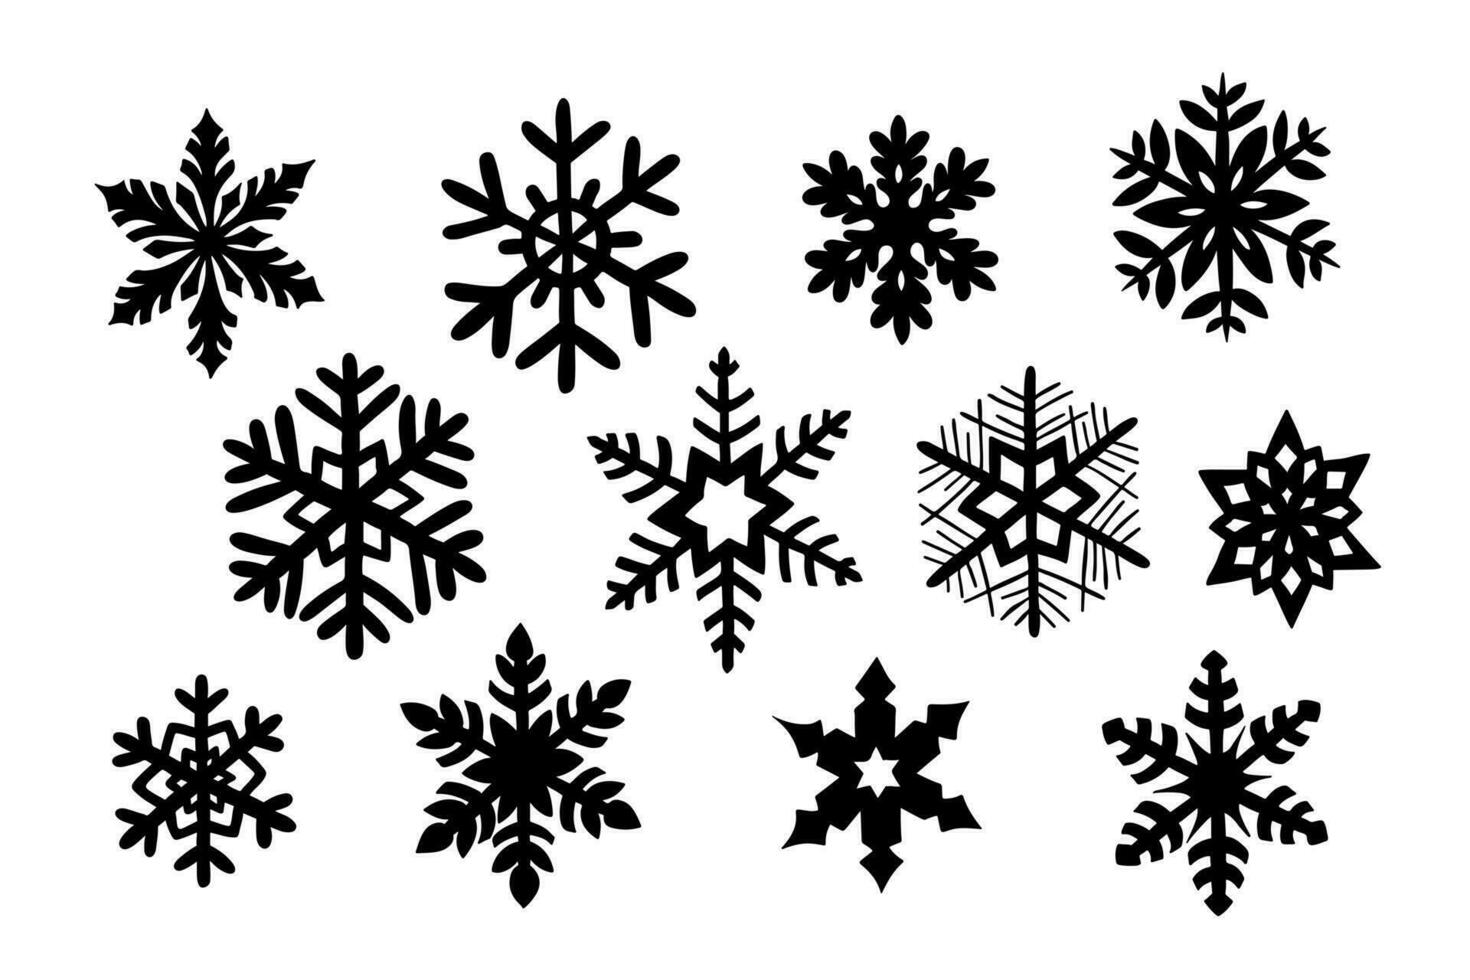 vinter- hand dragen silhuett uppsättning av snöflingor för jul dekoration. skiss översikt design för jul dekoration, klistermärken, mönster. svart kontur element på vit bakgrund vektor